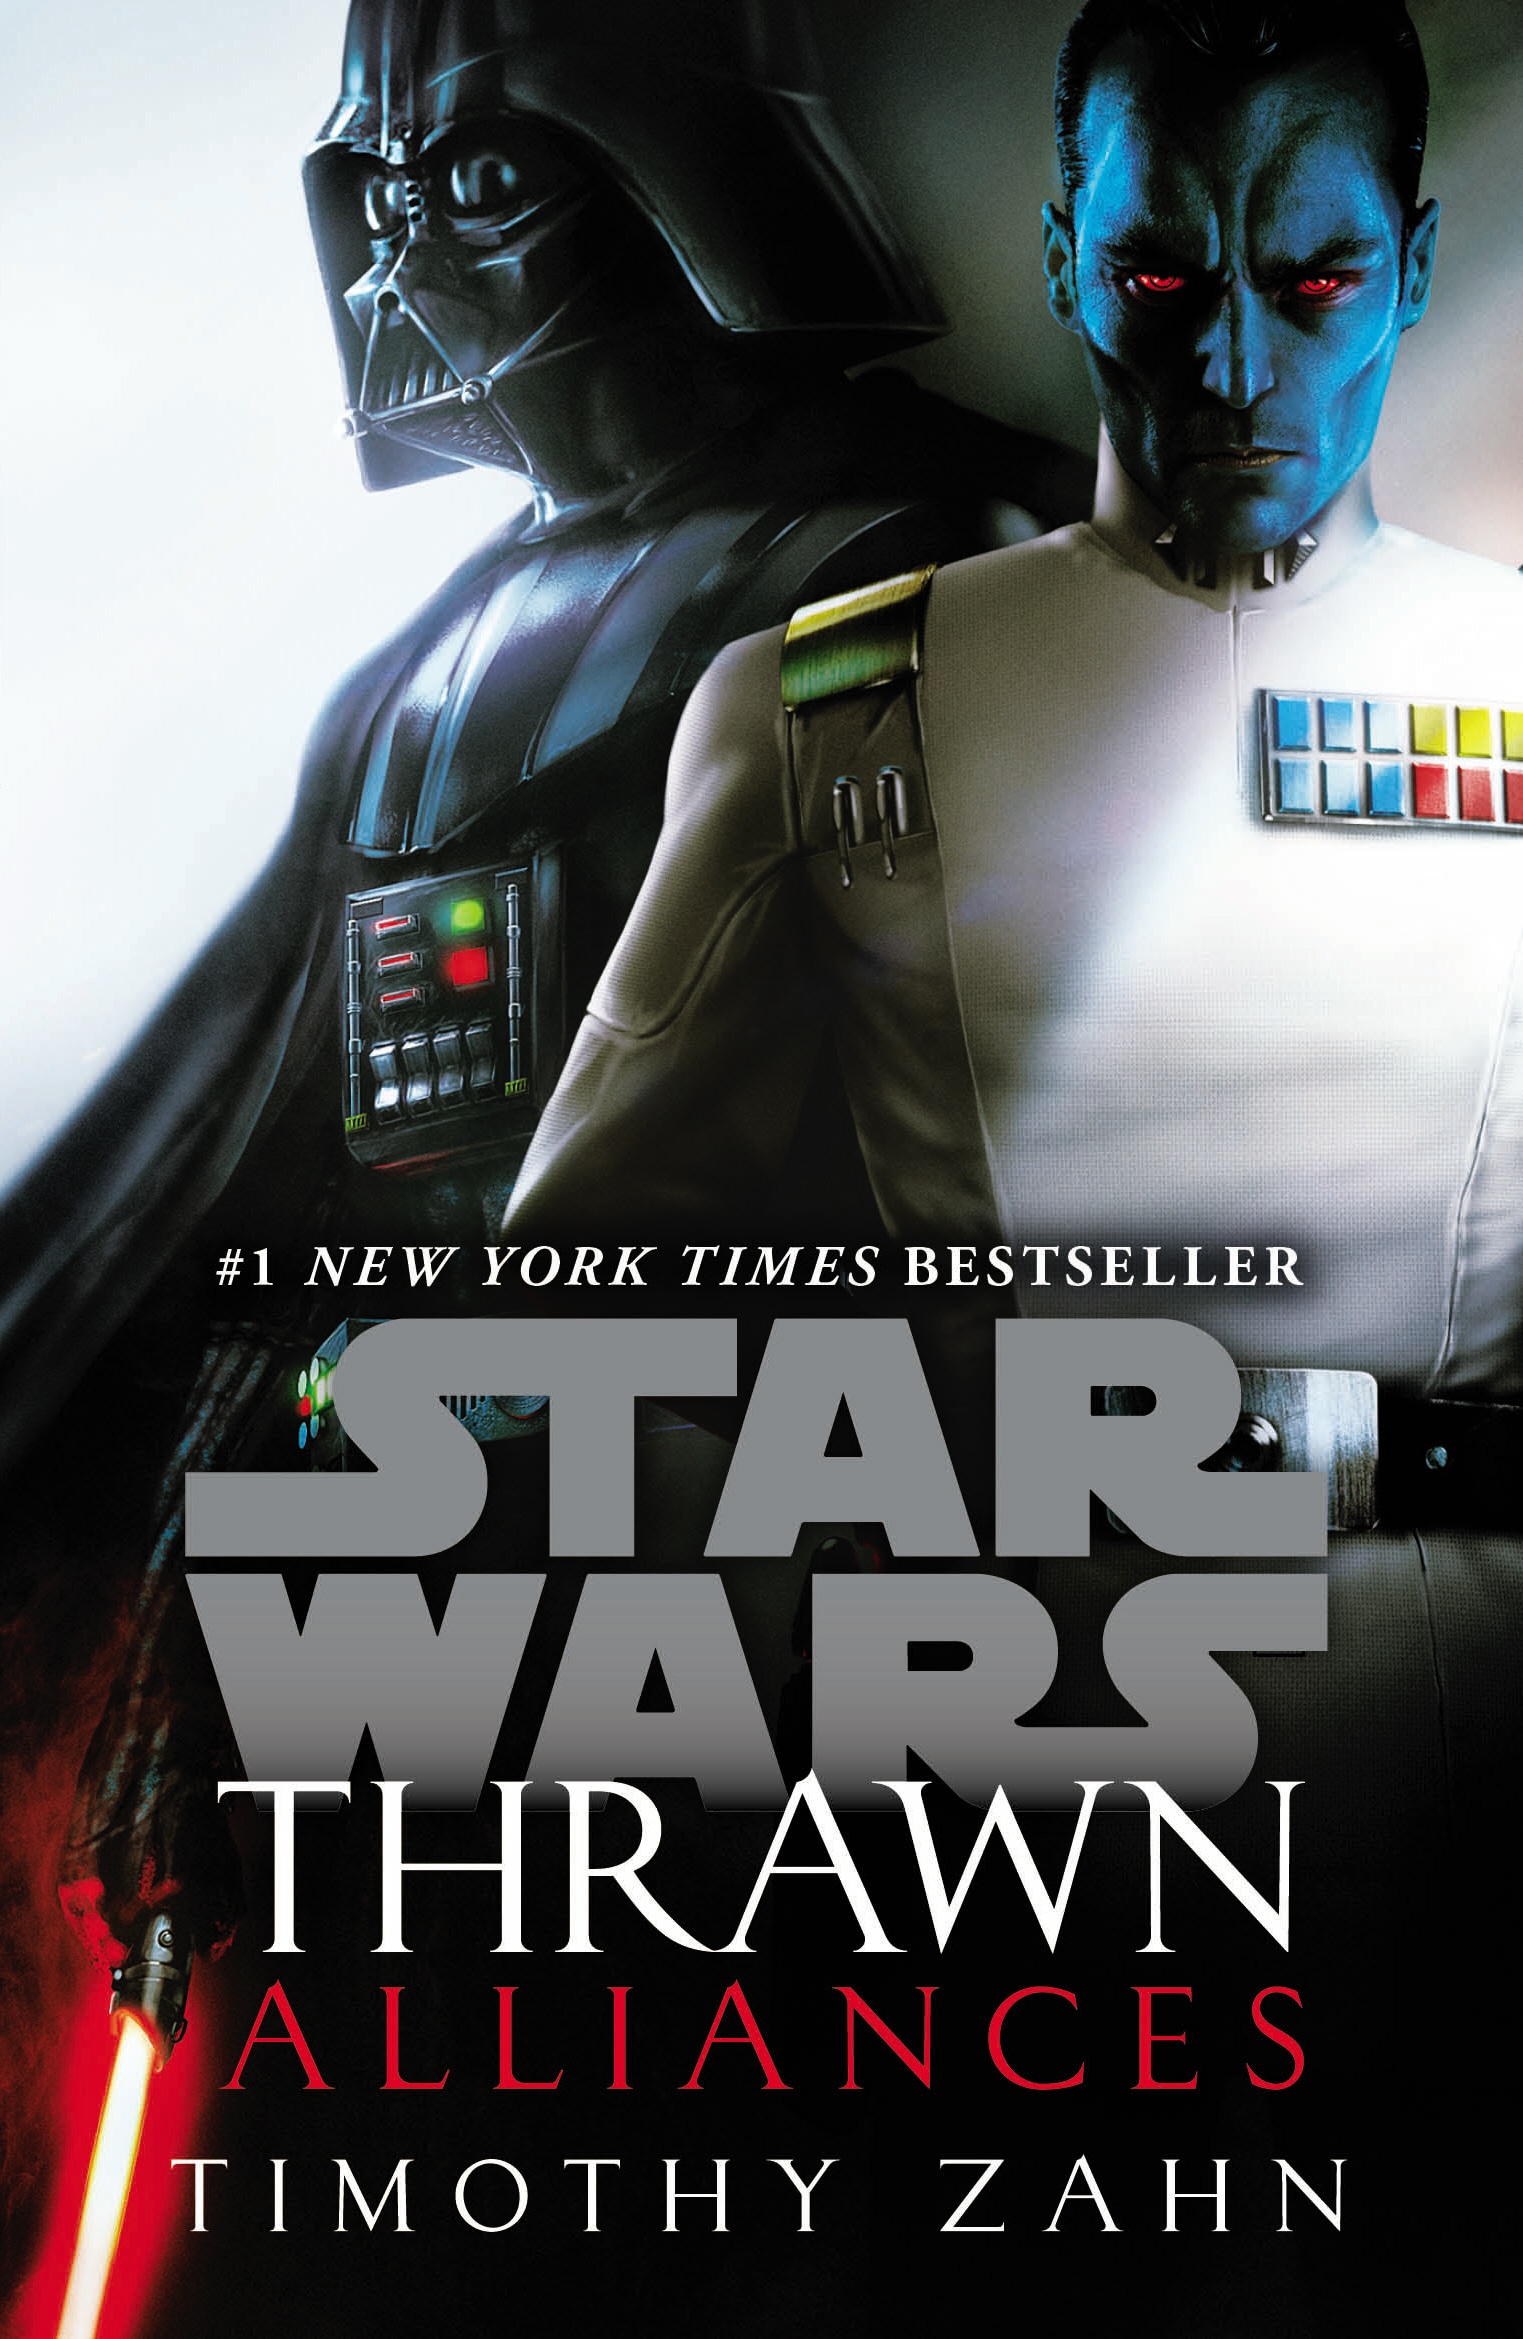 Book “Thrawn: Alliances (Star Wars)” by Timothy Zahn — February 28, 2019